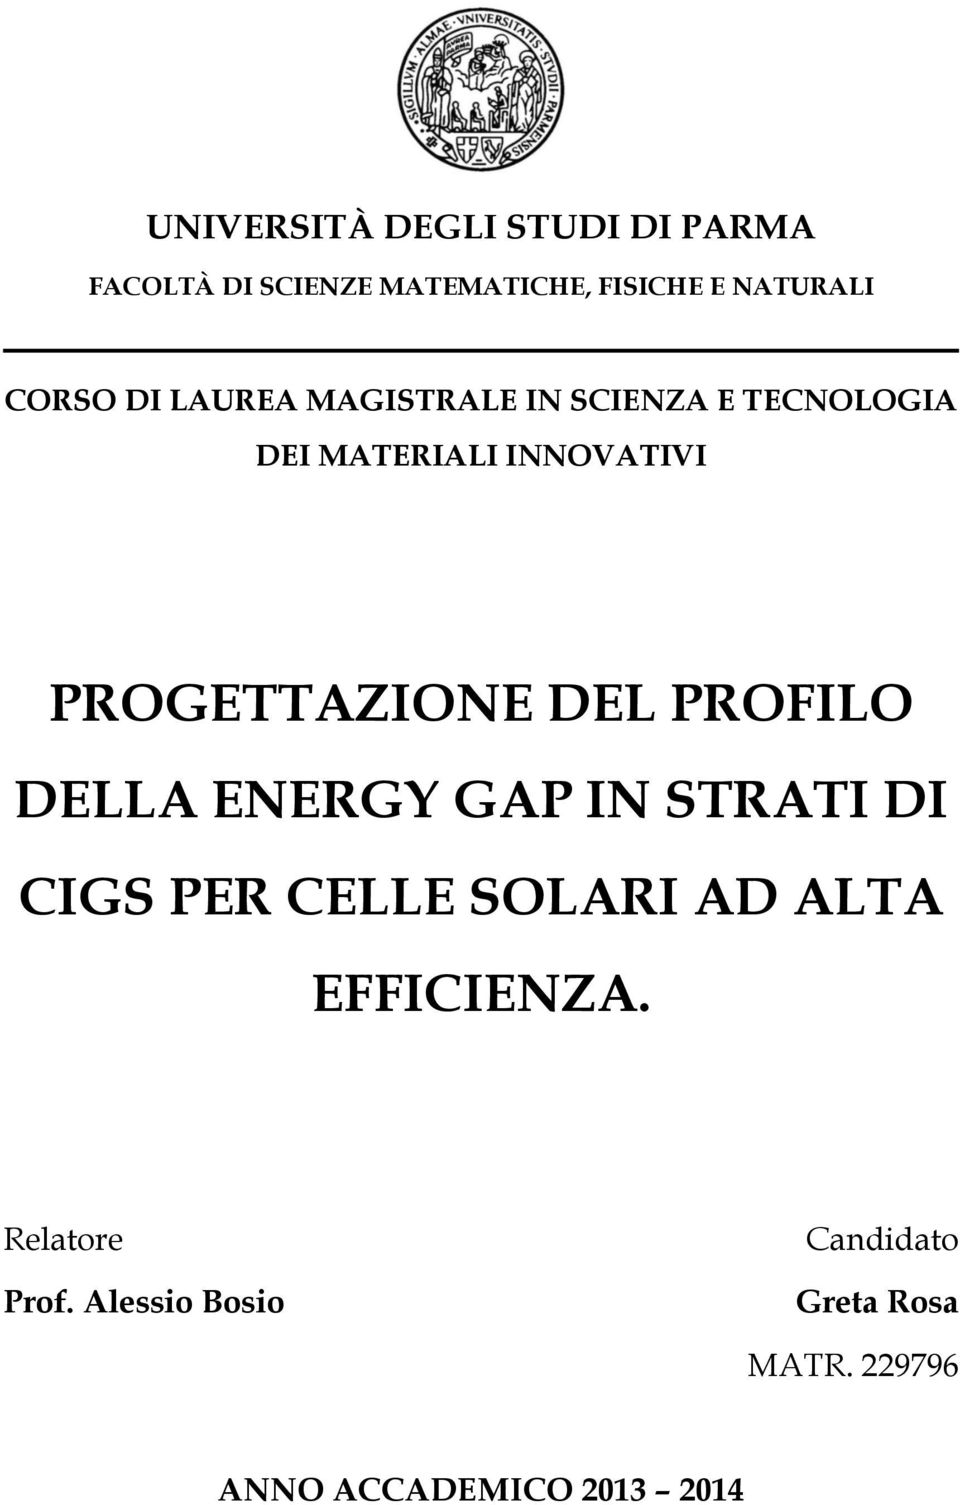 PROGETTAZIONE DEL PROFILO DELLA ENERGY GAP IN STRATI DI CIGS PER CELLE SOLARI AD ALTA